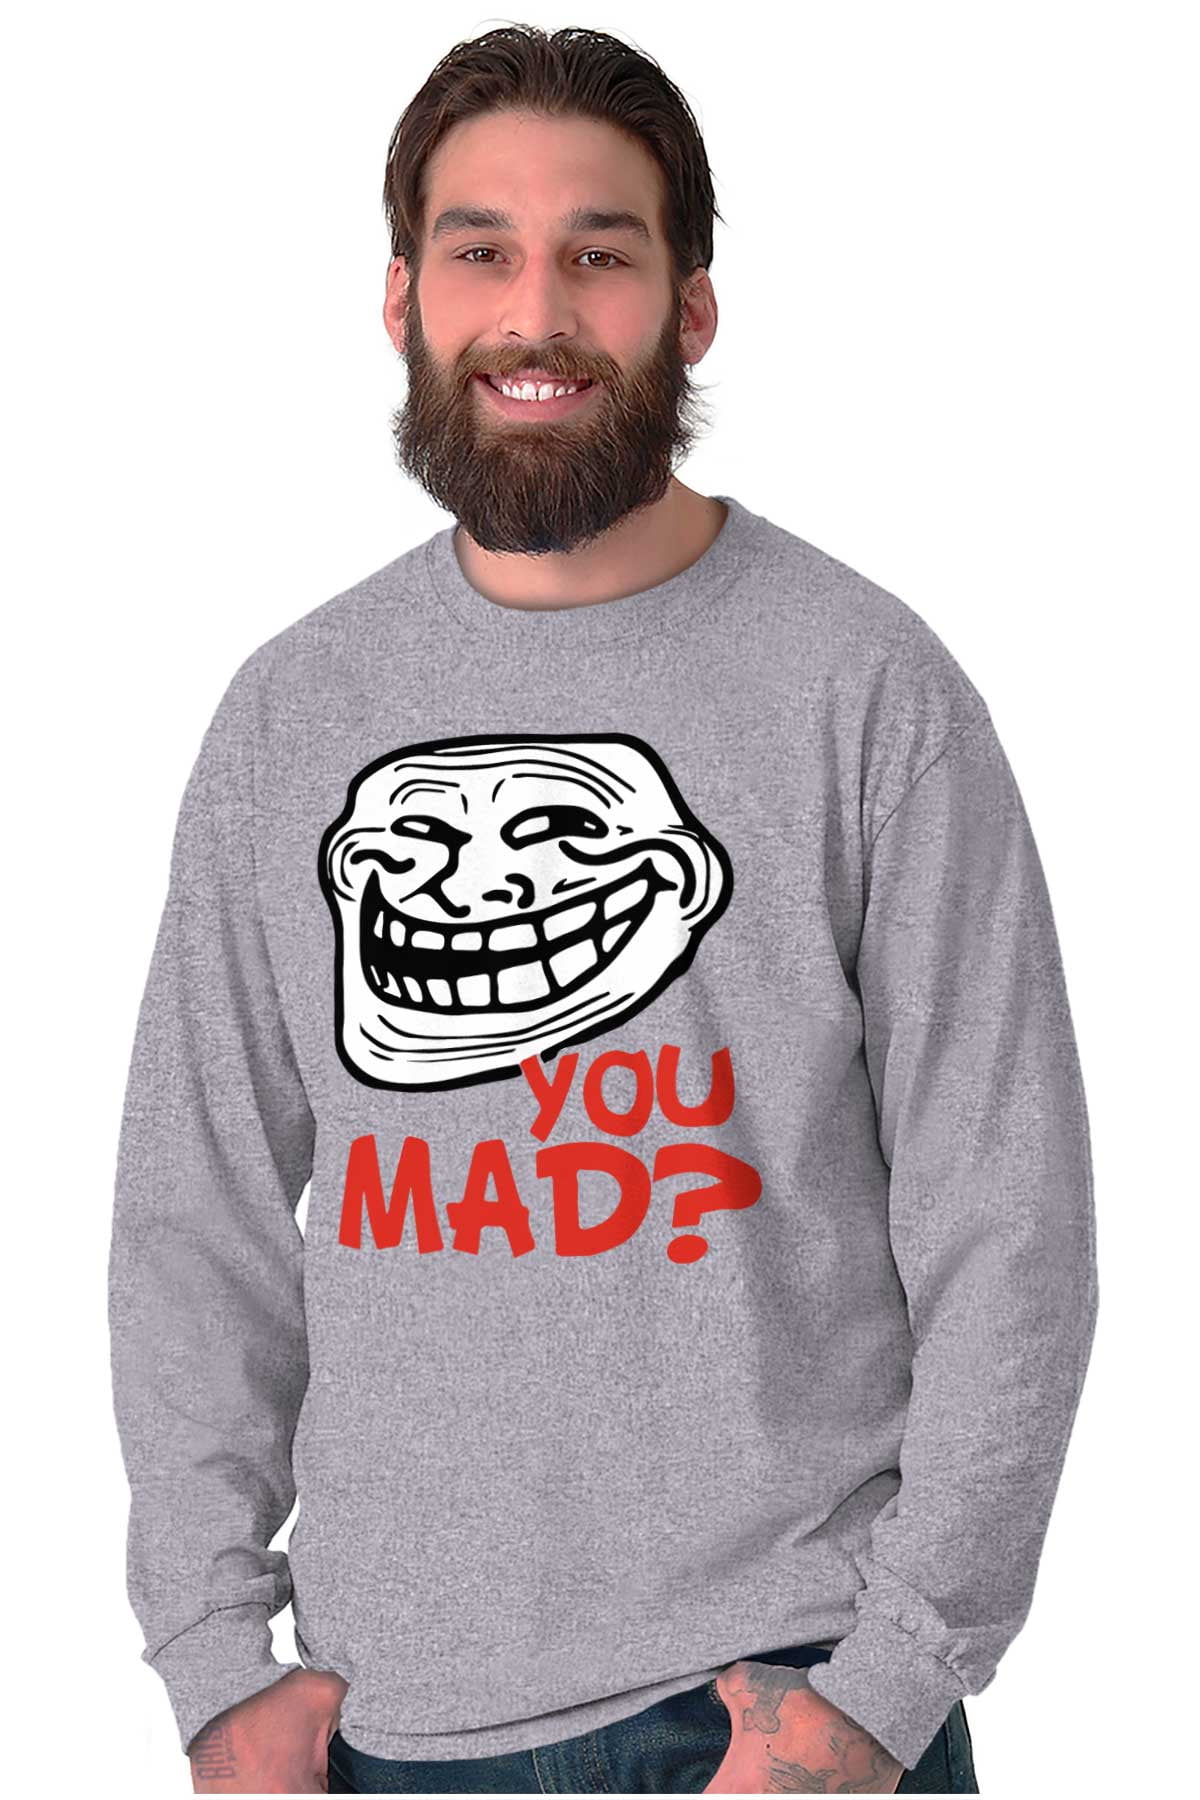 Sad Troll Face Meme Source the Voices Told Meme T-shirt 